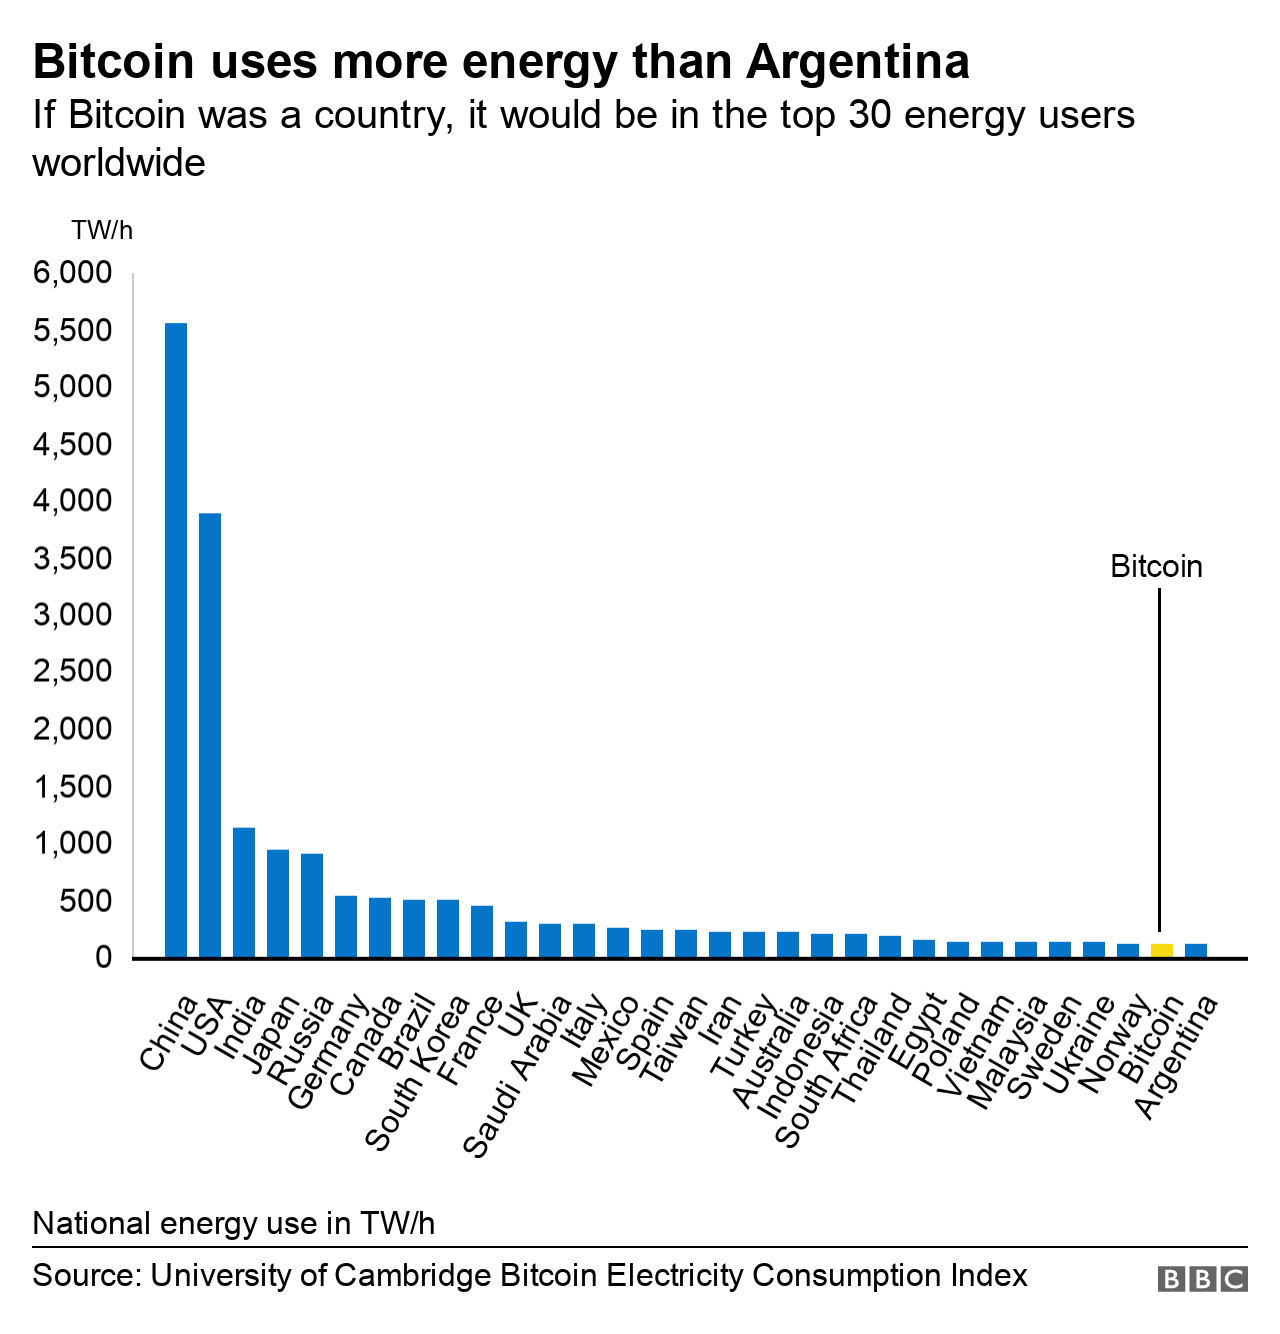 Quadro da Universidade de Cambridge analisa o consumo de eletricidade do Bitcoin e outros países.